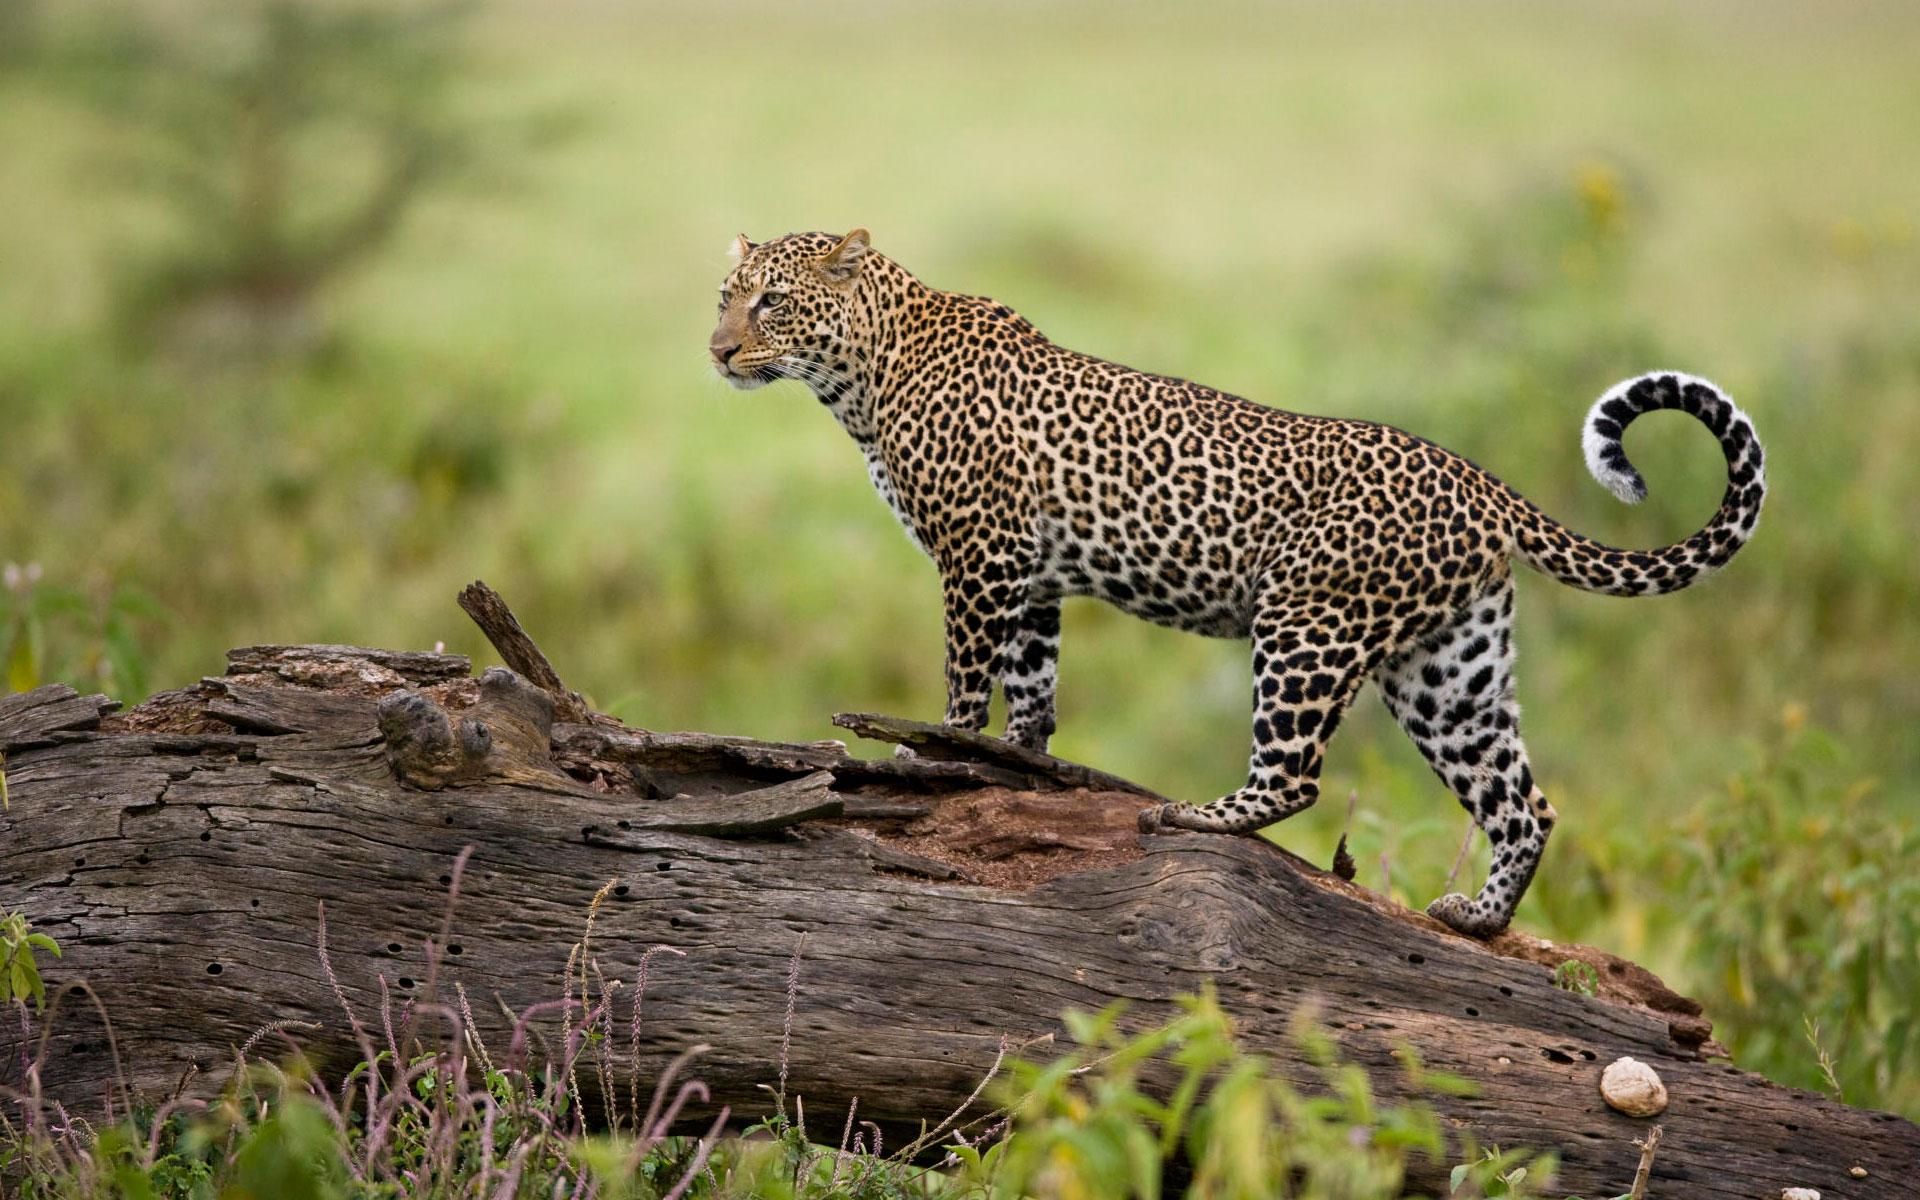 Leopard Kenya # 1920x1200. All For Desktop